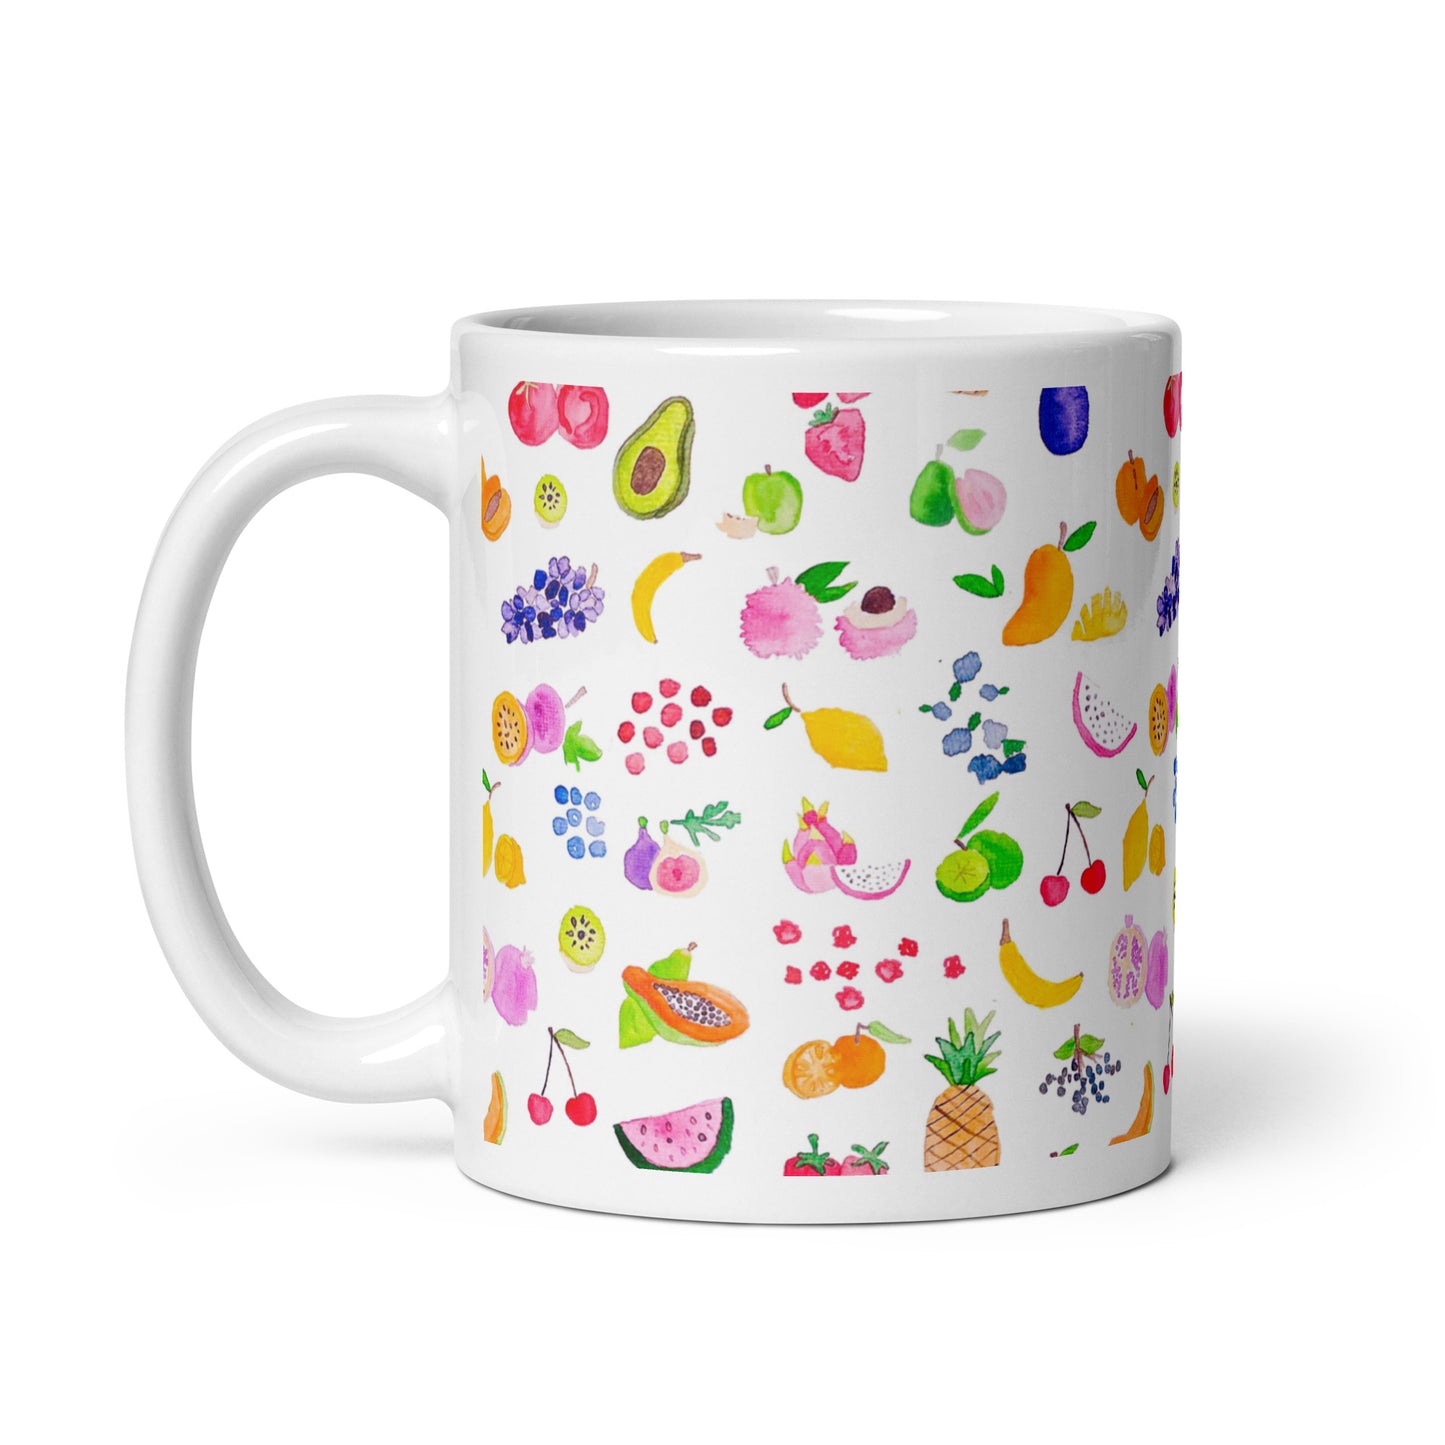 Fruit mug